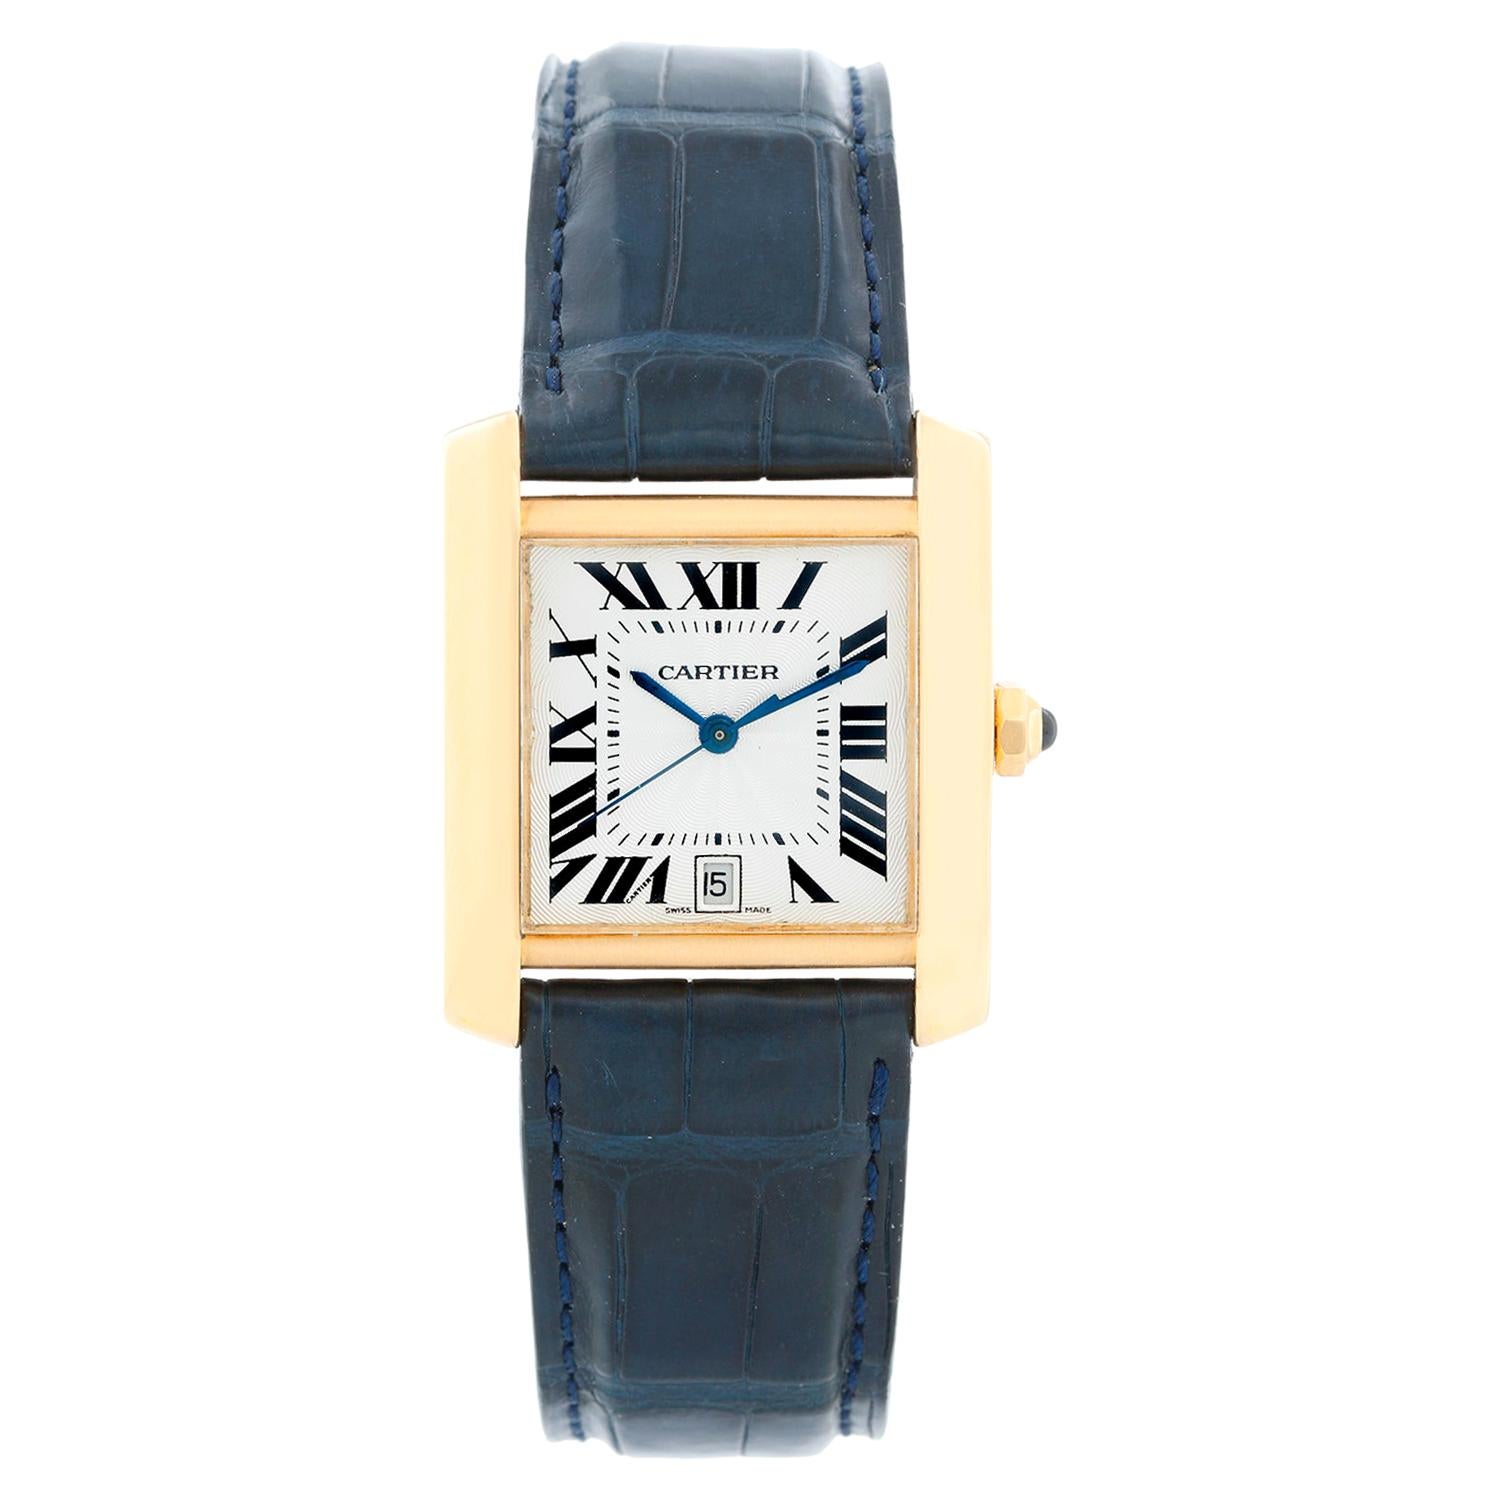 Cartier Tank Francaise 18 Karat Yellow Gold Men's Watch W5000156